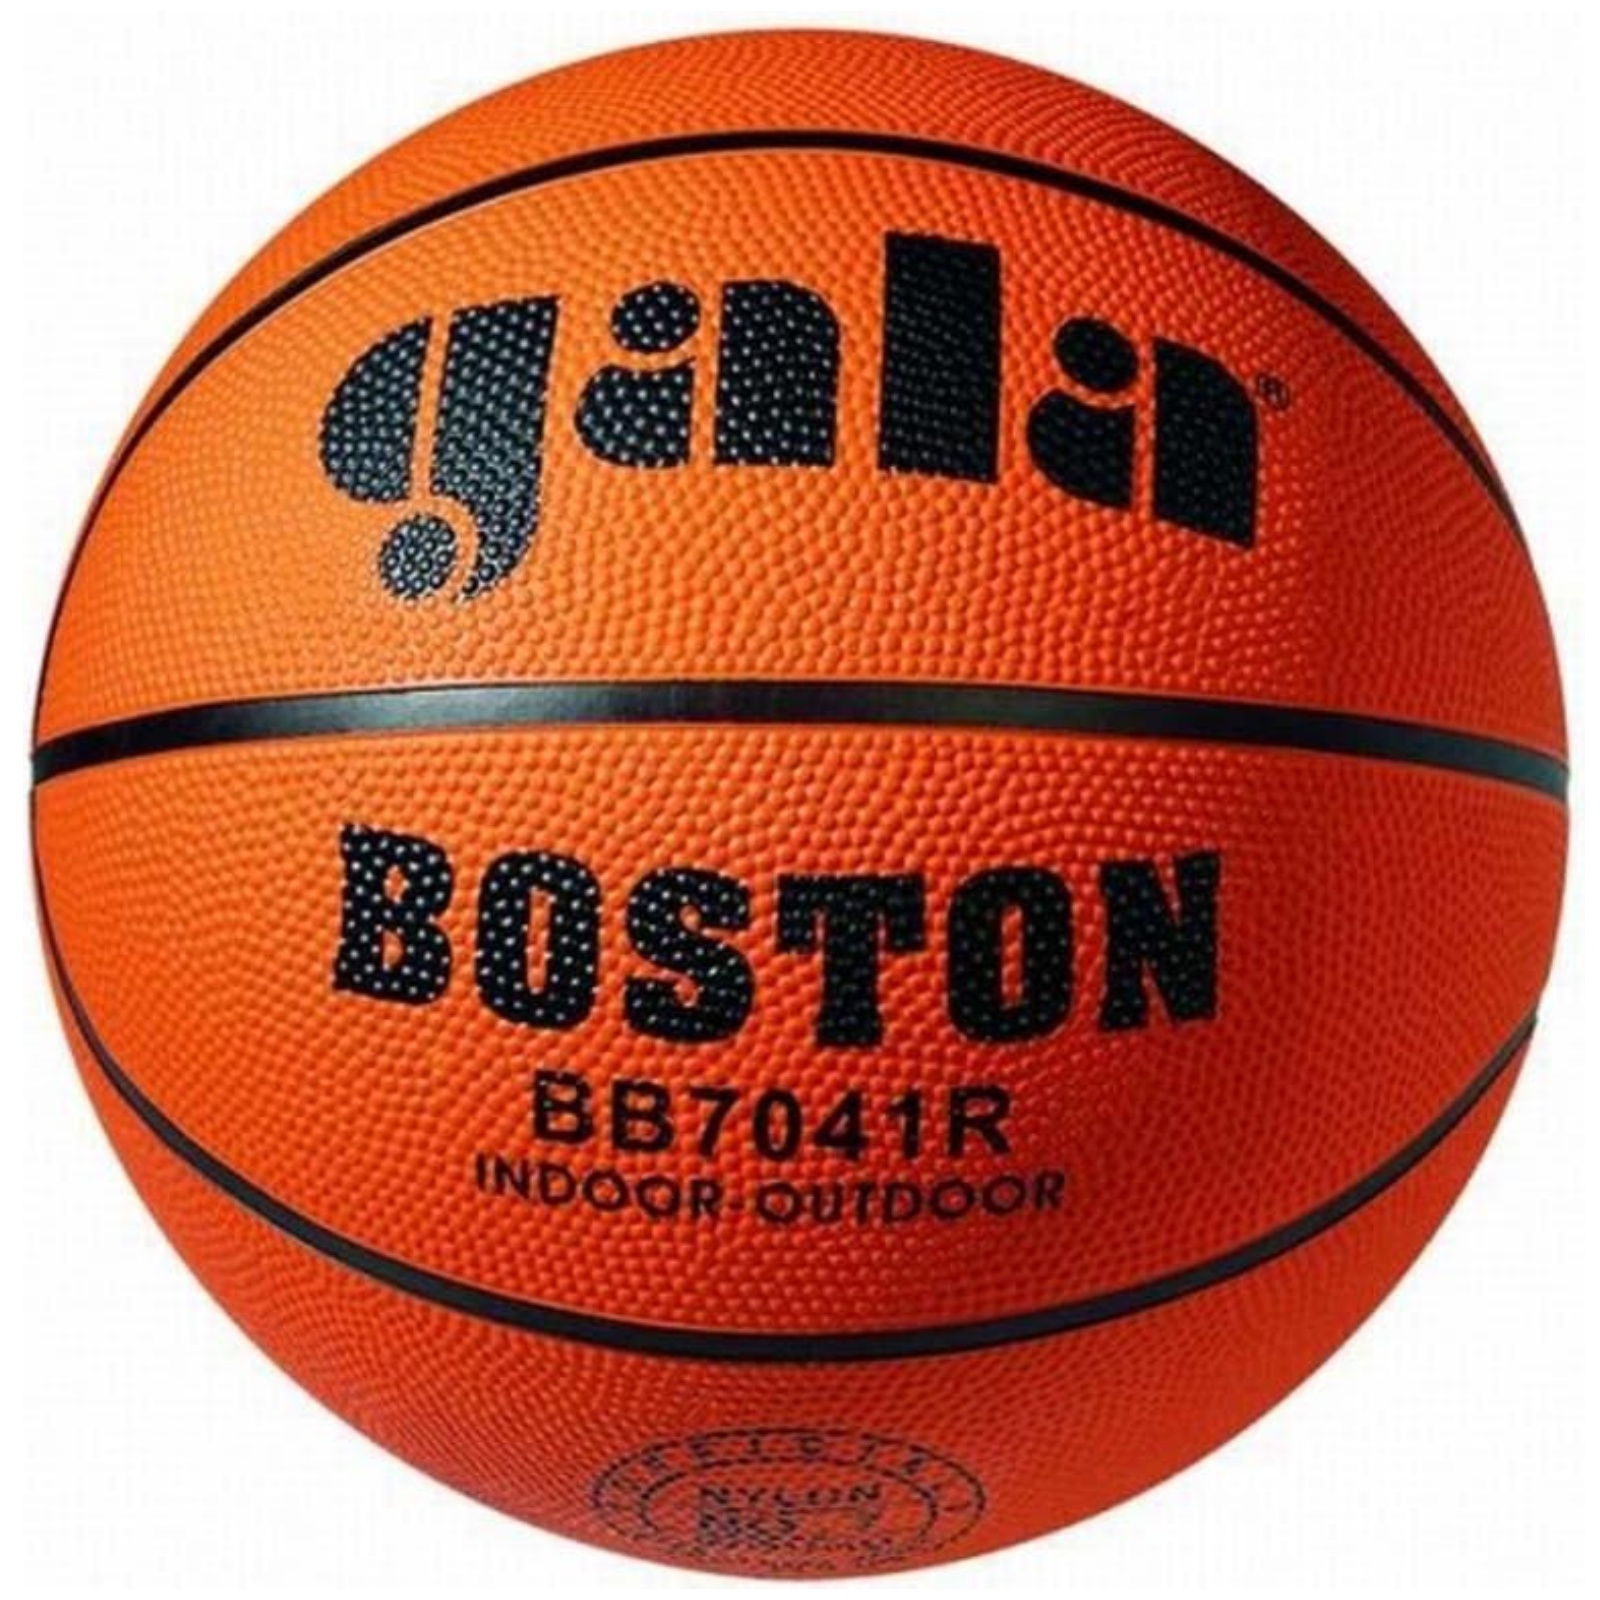 E-shop Basketbalová lopta GALA Boston BB7041R